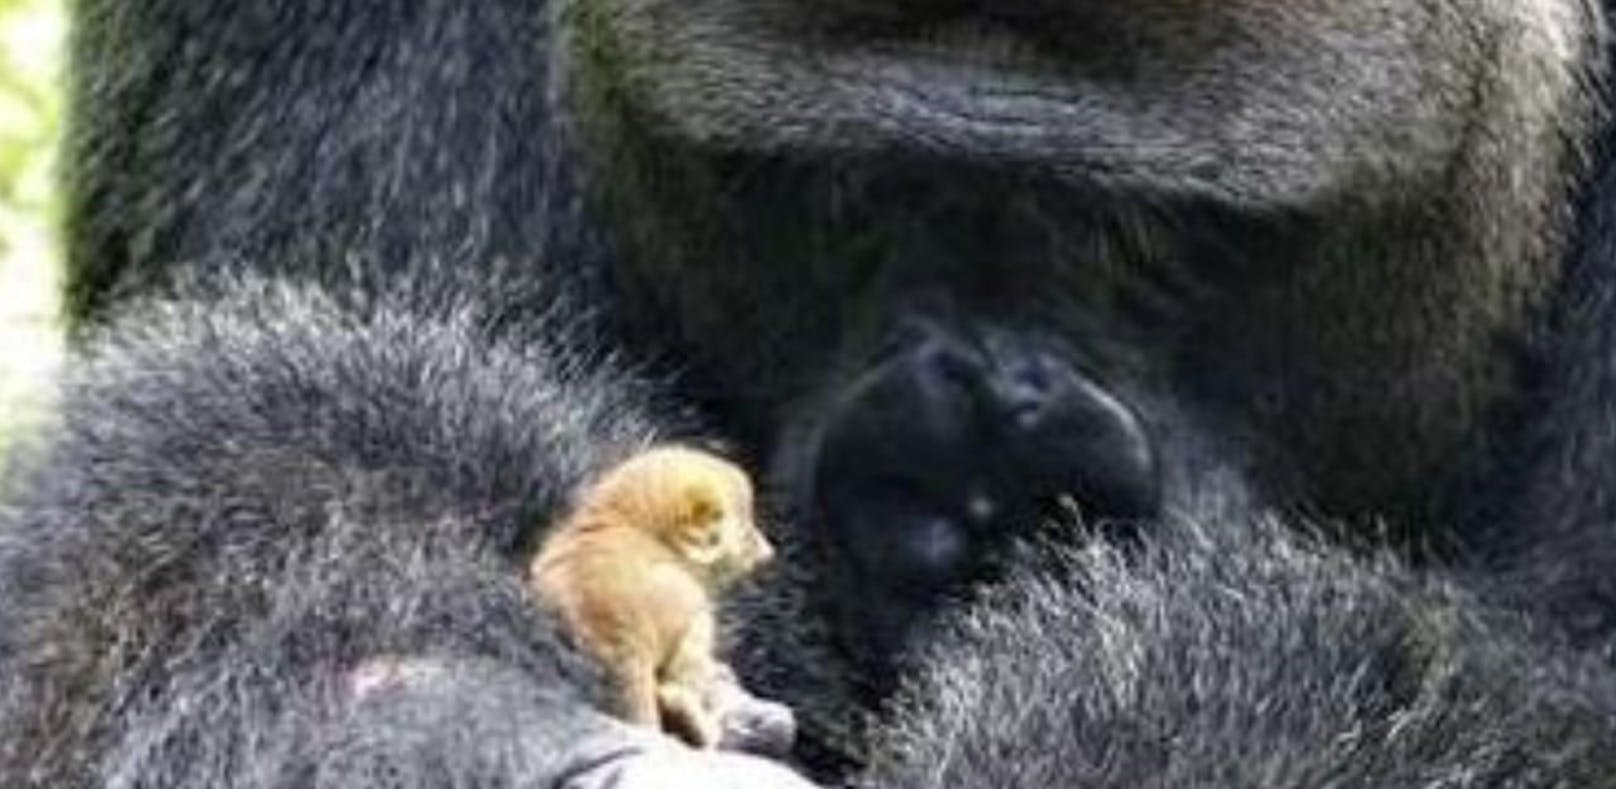 Riesiger Gorilla spielt mit süßem Mini-Affen